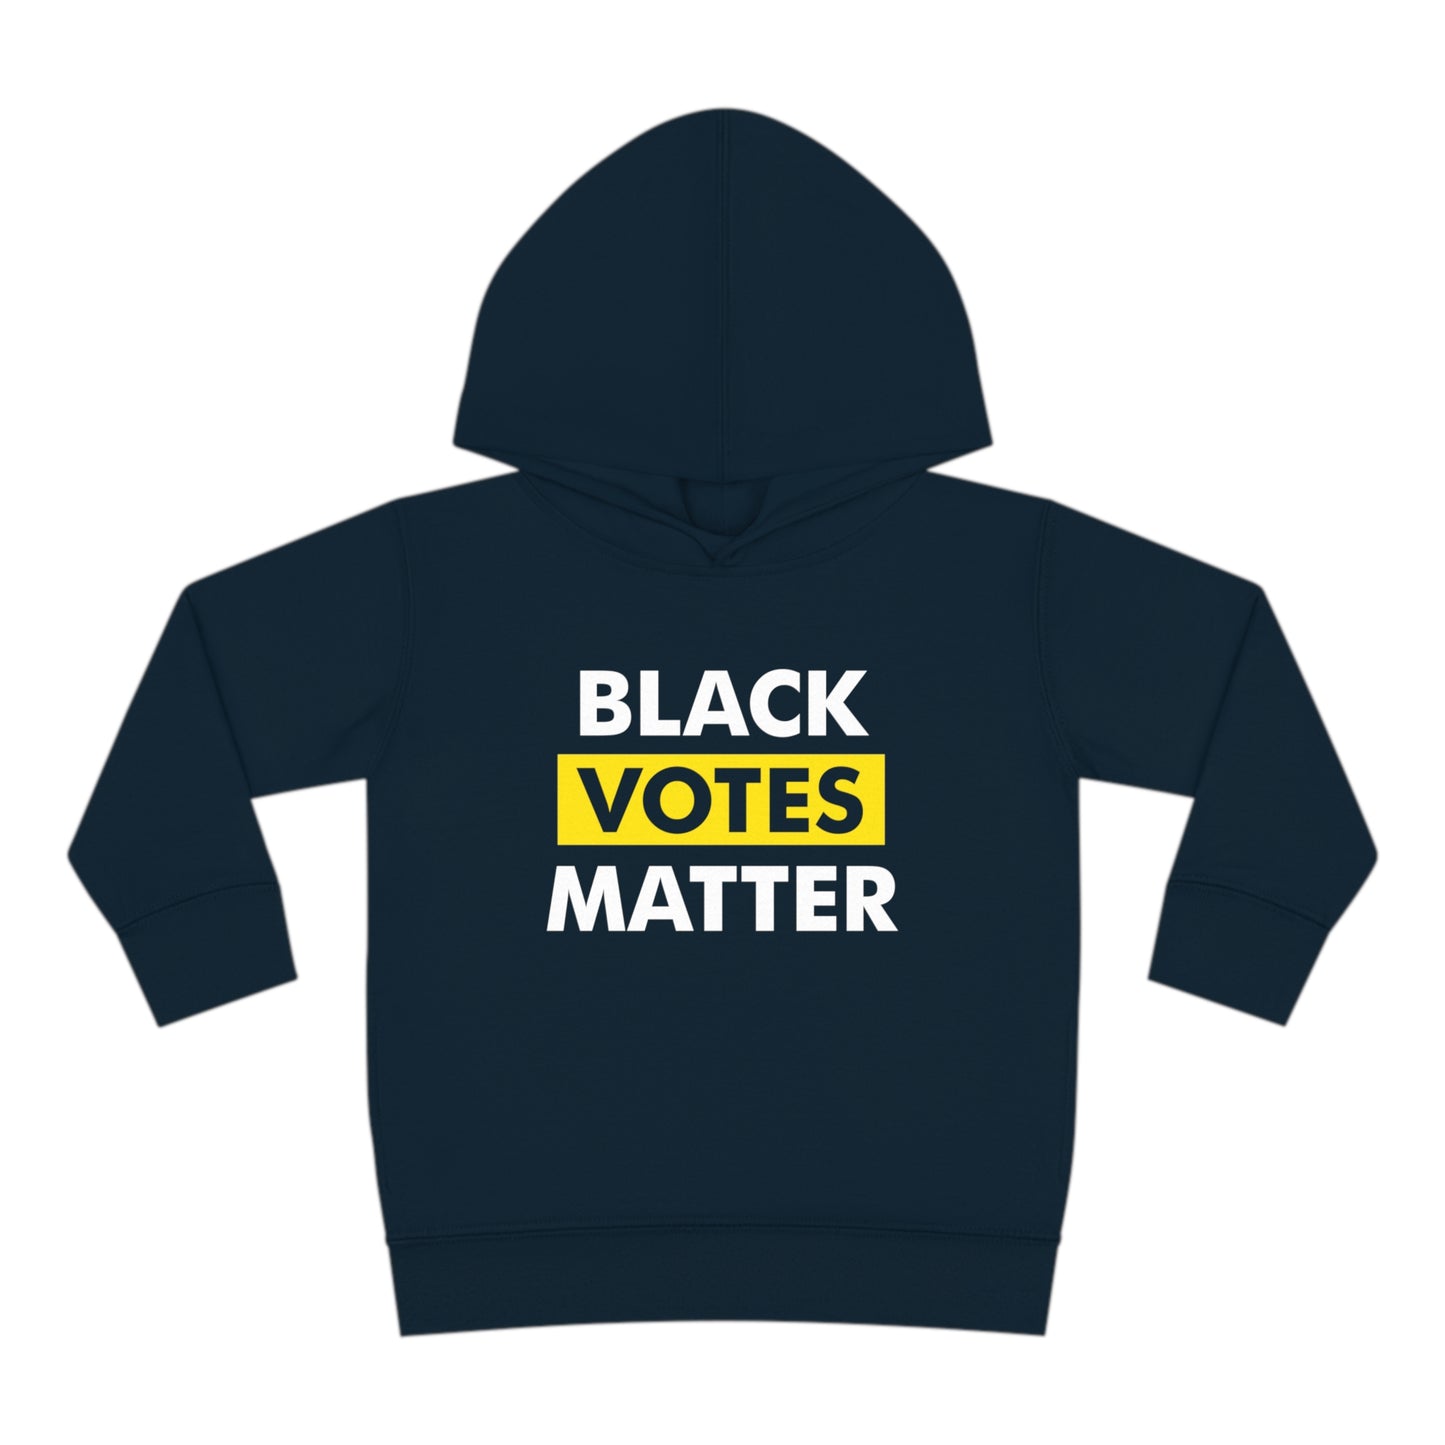 “Black Votes Matter” Toddler Hoodie